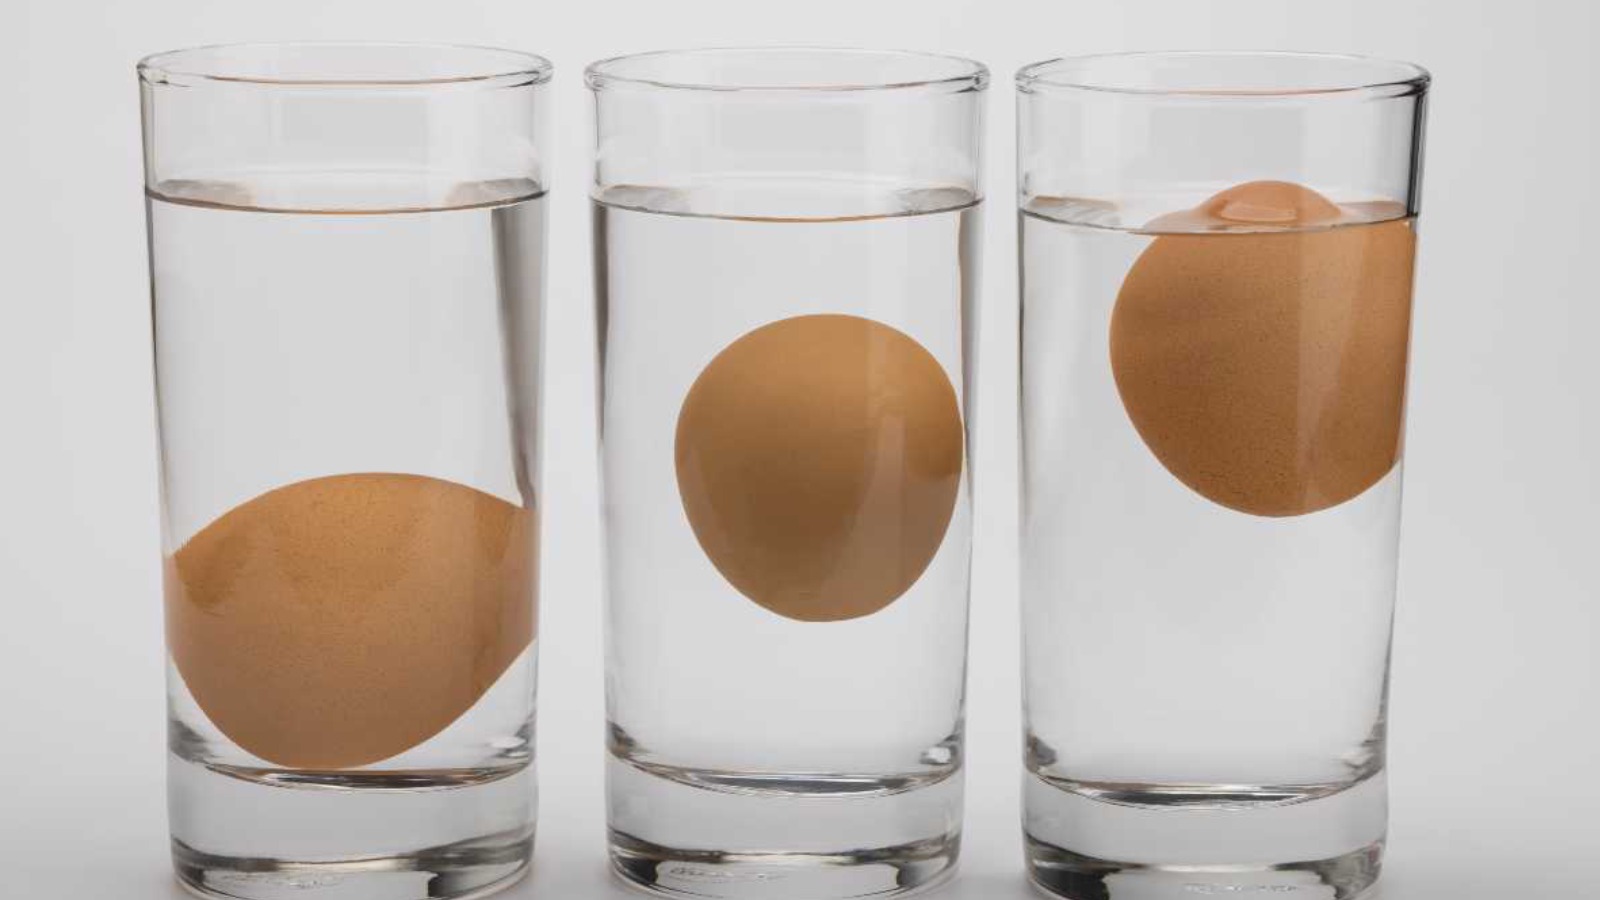 Rengi, kokusu ve barkodu değiştiriliyor... Peki bozuk yumurta nasıl anlaşılır? Çözümü basit